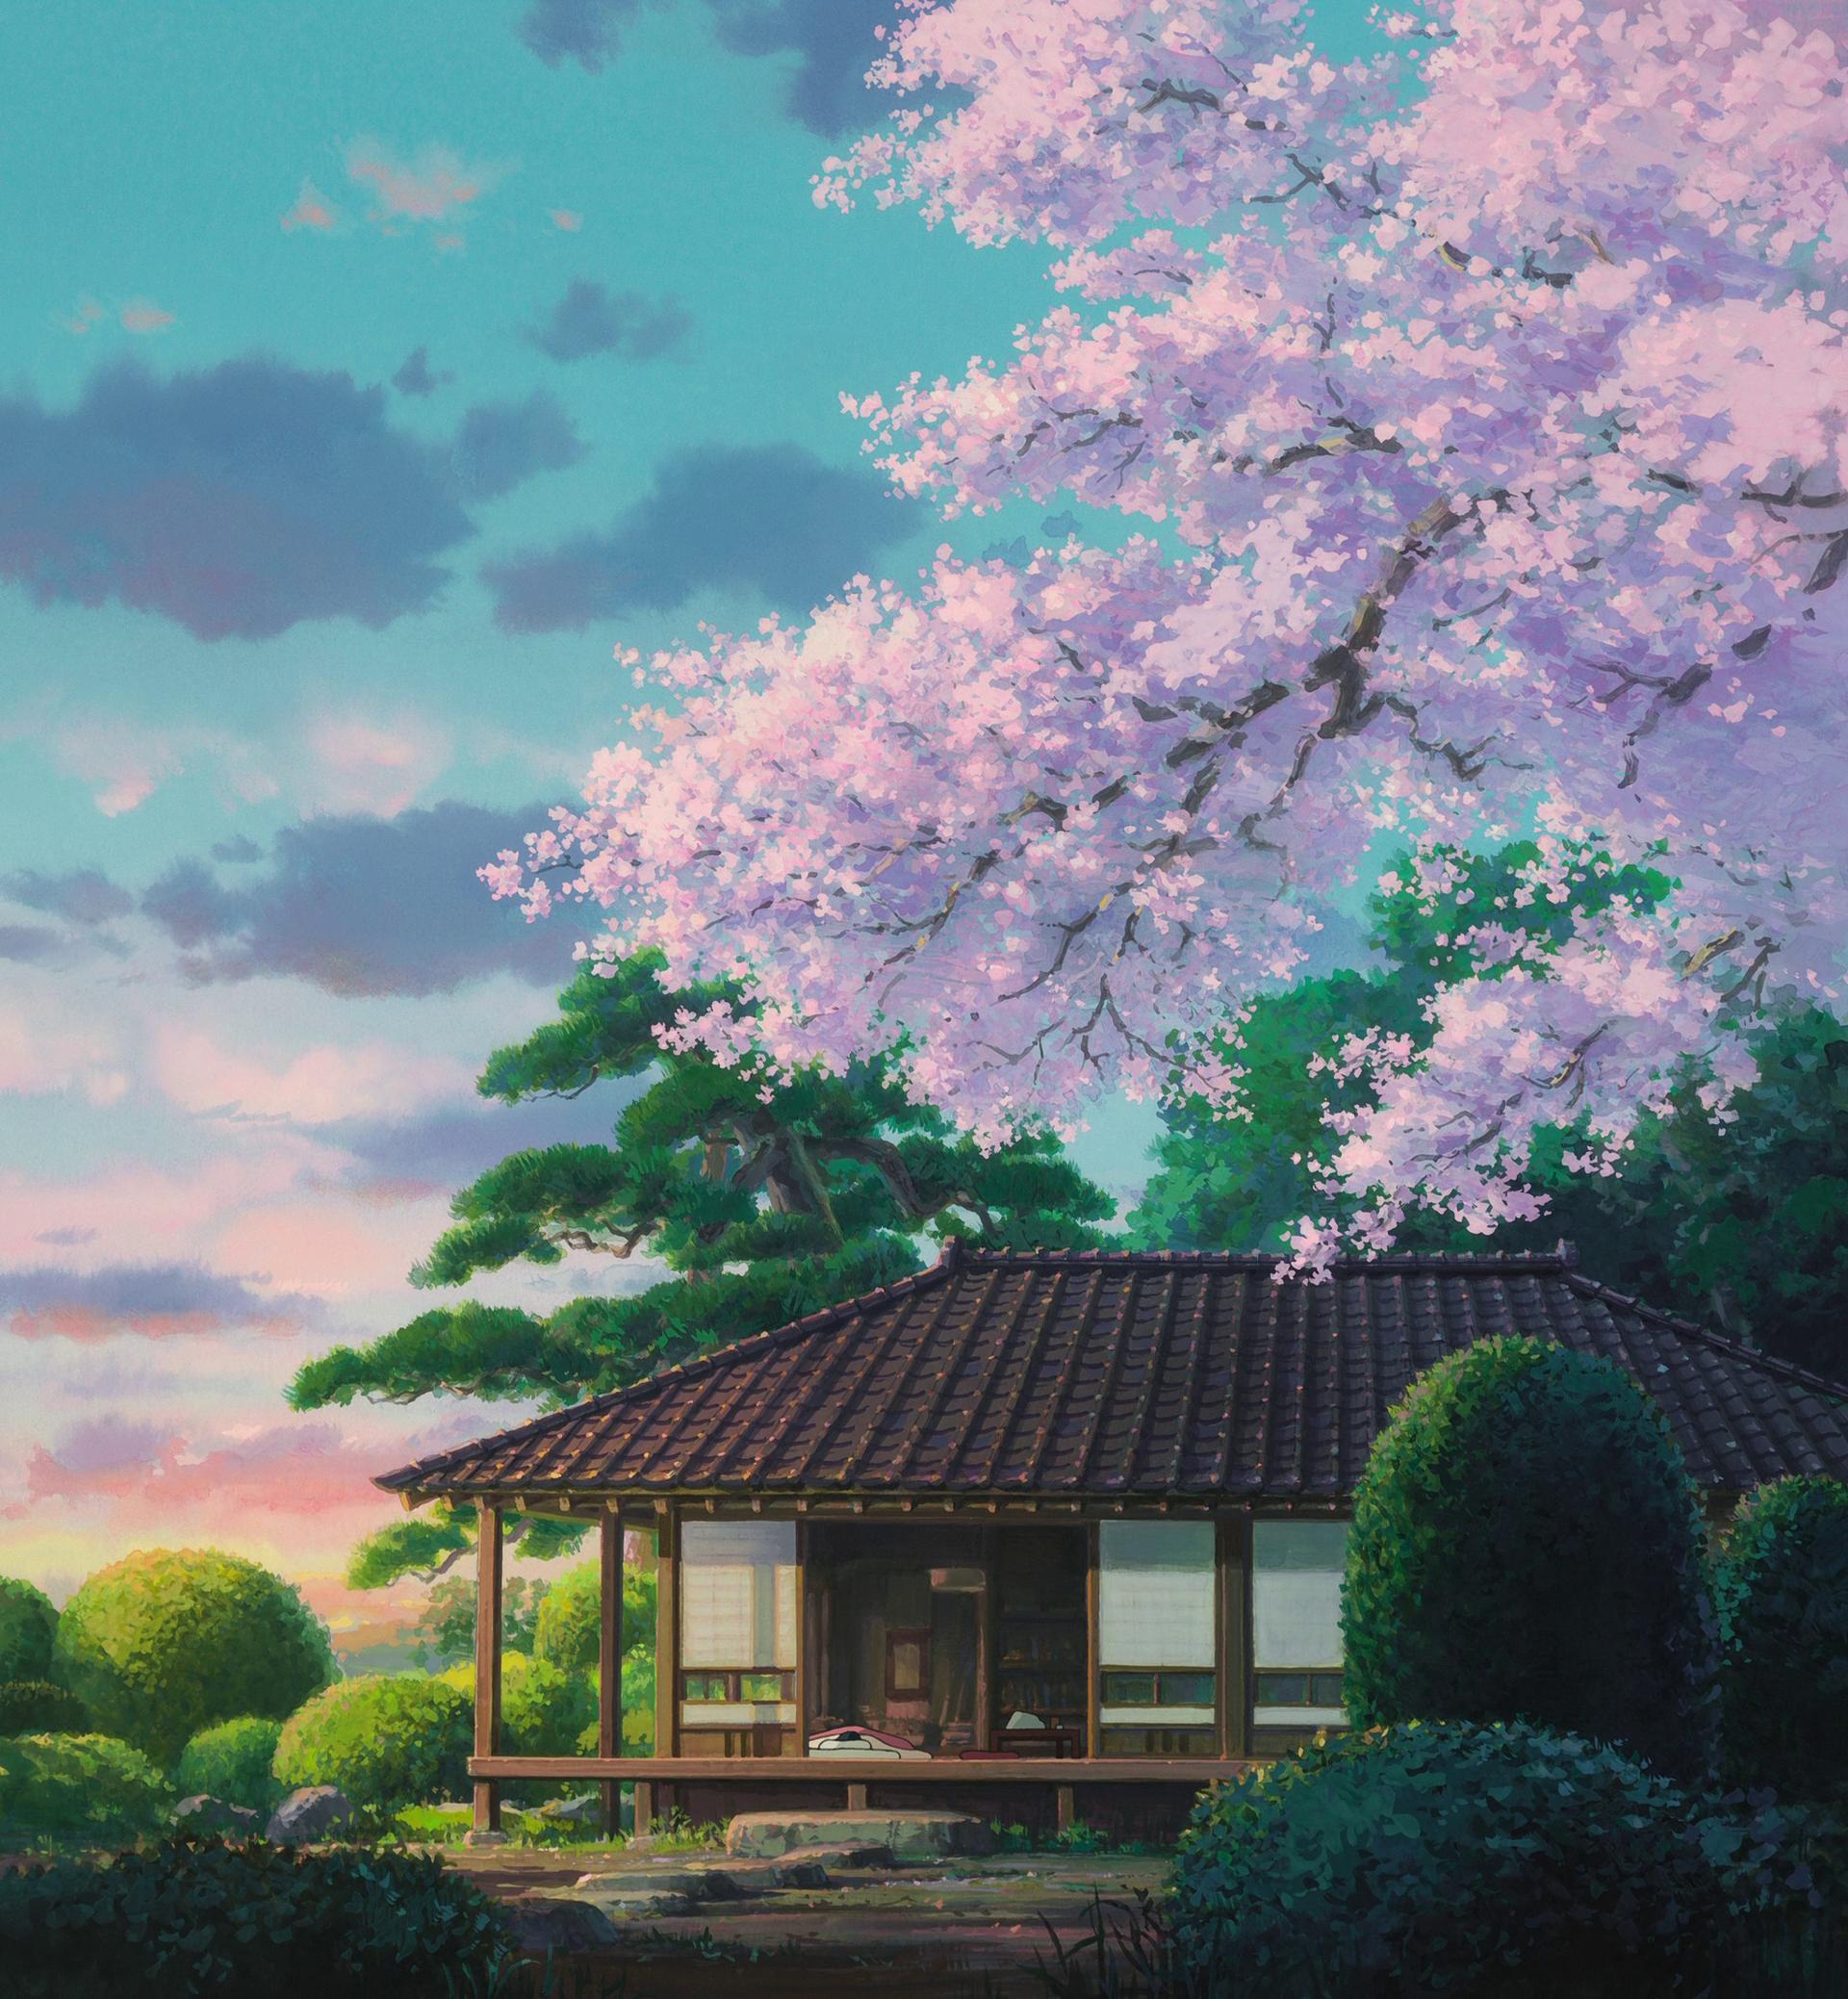 Bộ hình nền đẹp mê ly dành cho các fan ruột của phim hoạt hình Ghibli   HOẠT HÌNH GHIBLI HOAT HINH GHIBLI